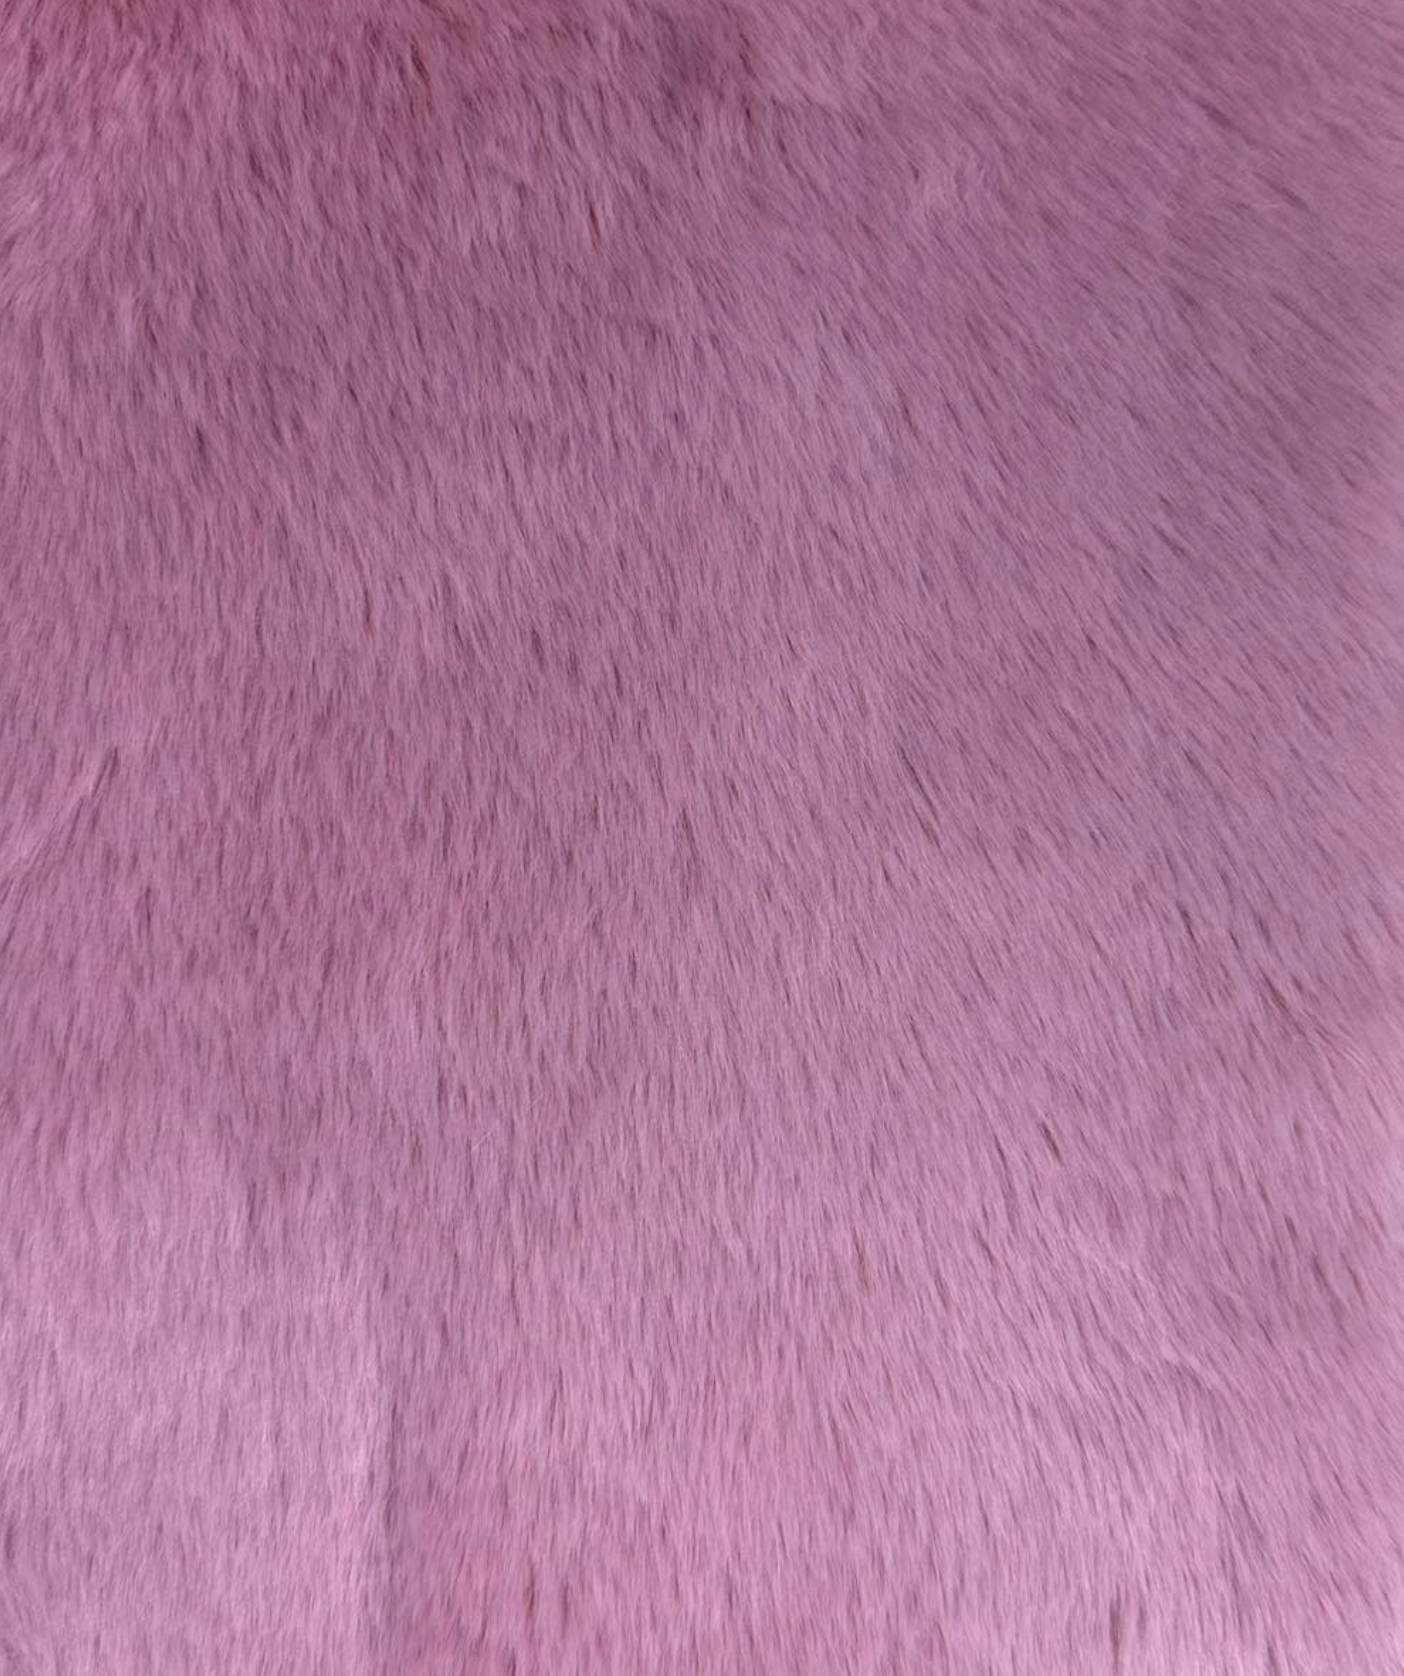 Siberian Dusty Pink